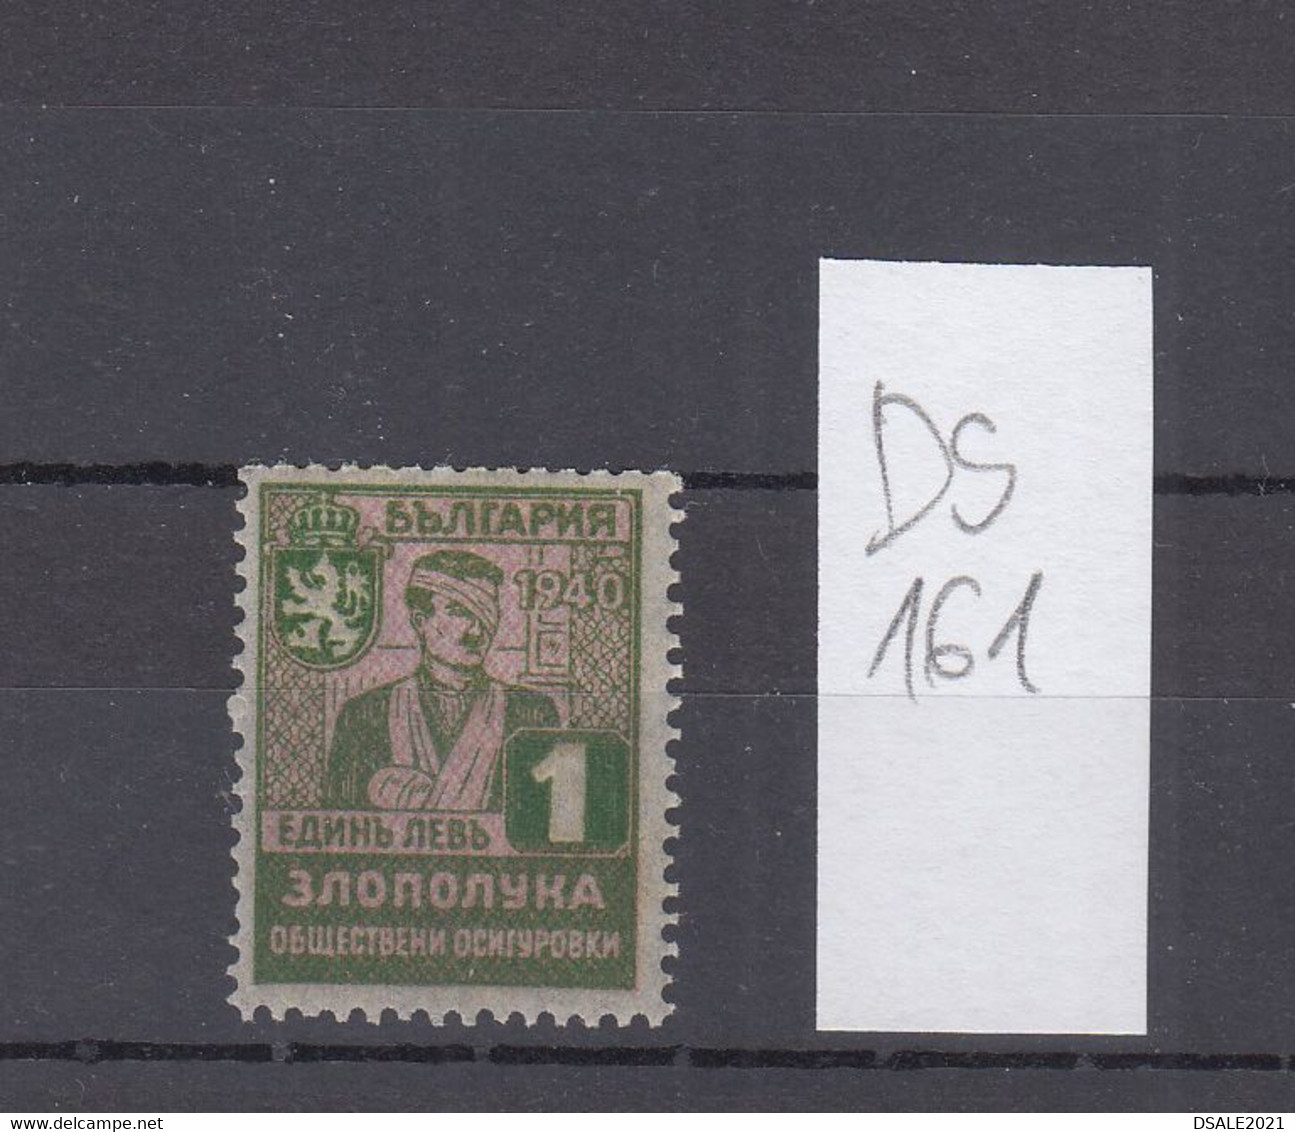 Bulgaria Bulgarie Bulgarije 1940 Social Insurance 1Lv. Accident Insurance Stamp Fiscal Revenue Bulgarian (ds161) - Dienstmarken